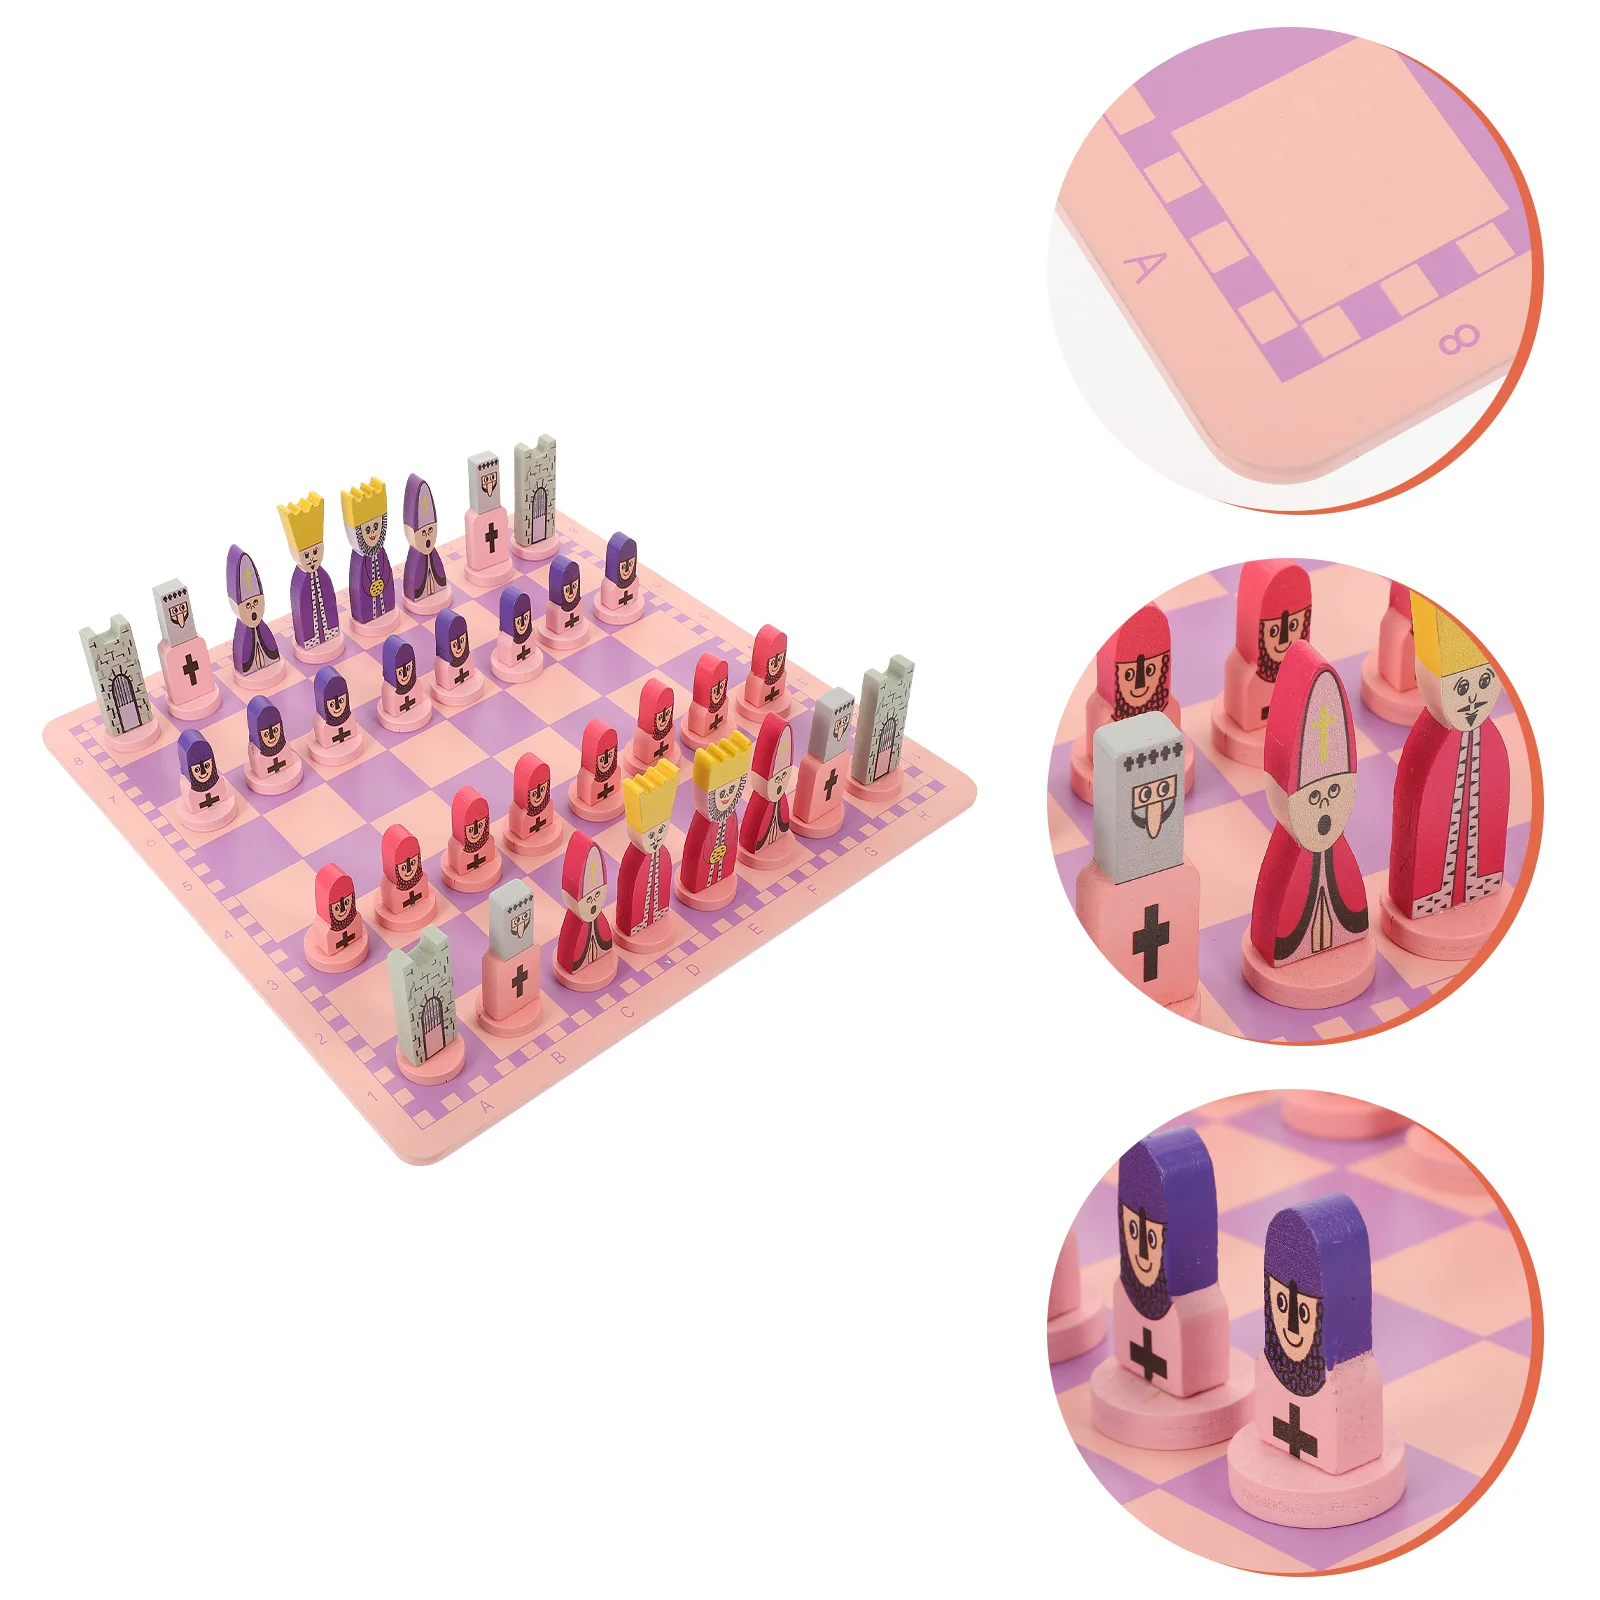 

Шахматный набор для путешествий с шахматной доской, обучающие игрушки для детей и взрослых, детская головоломка, складные шахматы